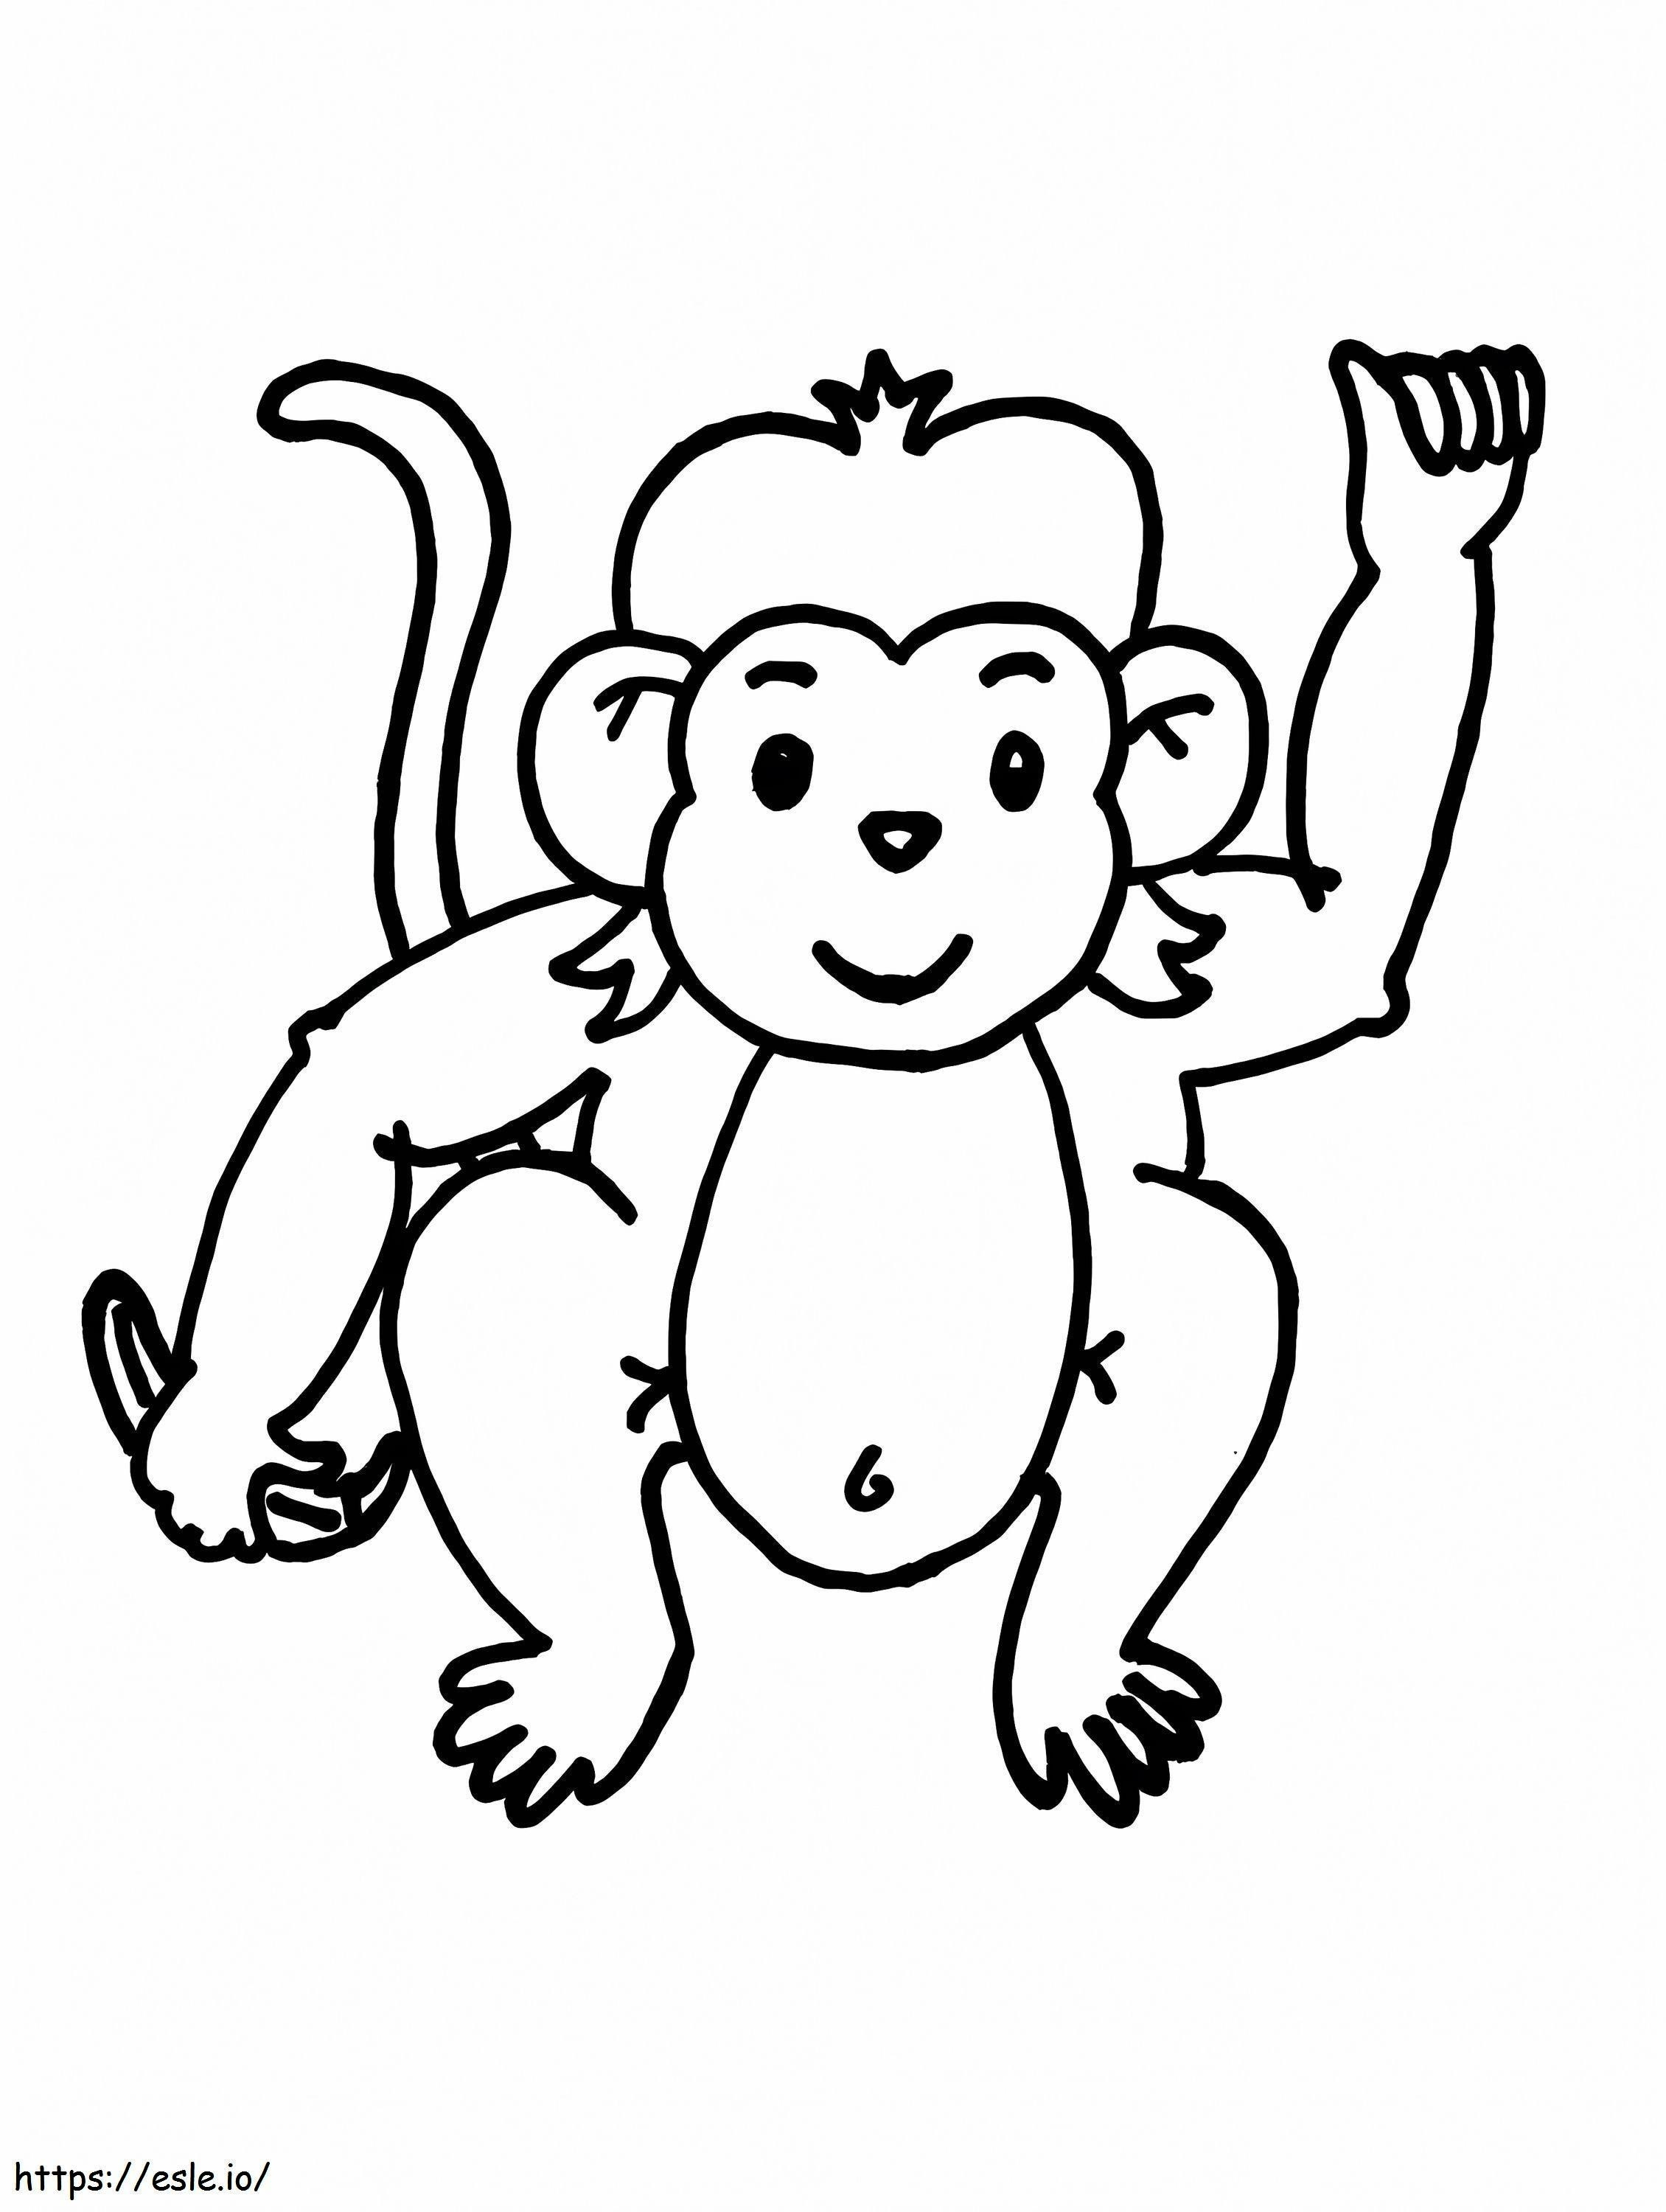 Freundlicher Affe ausmalbilder